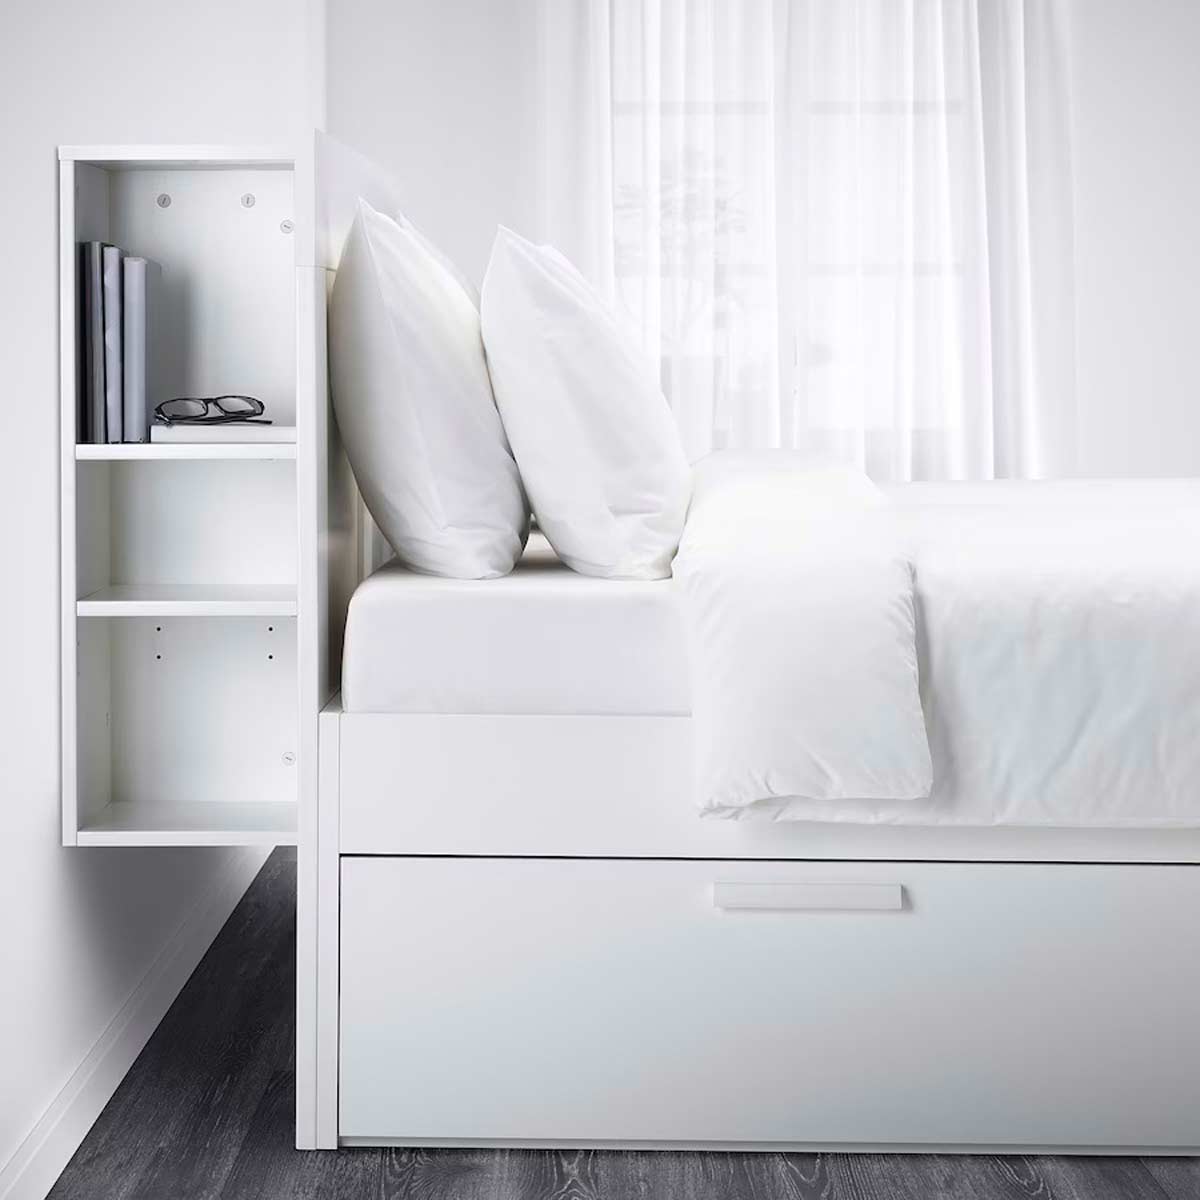 Soluzioni salvaspazio IKEA per la camera da letto.